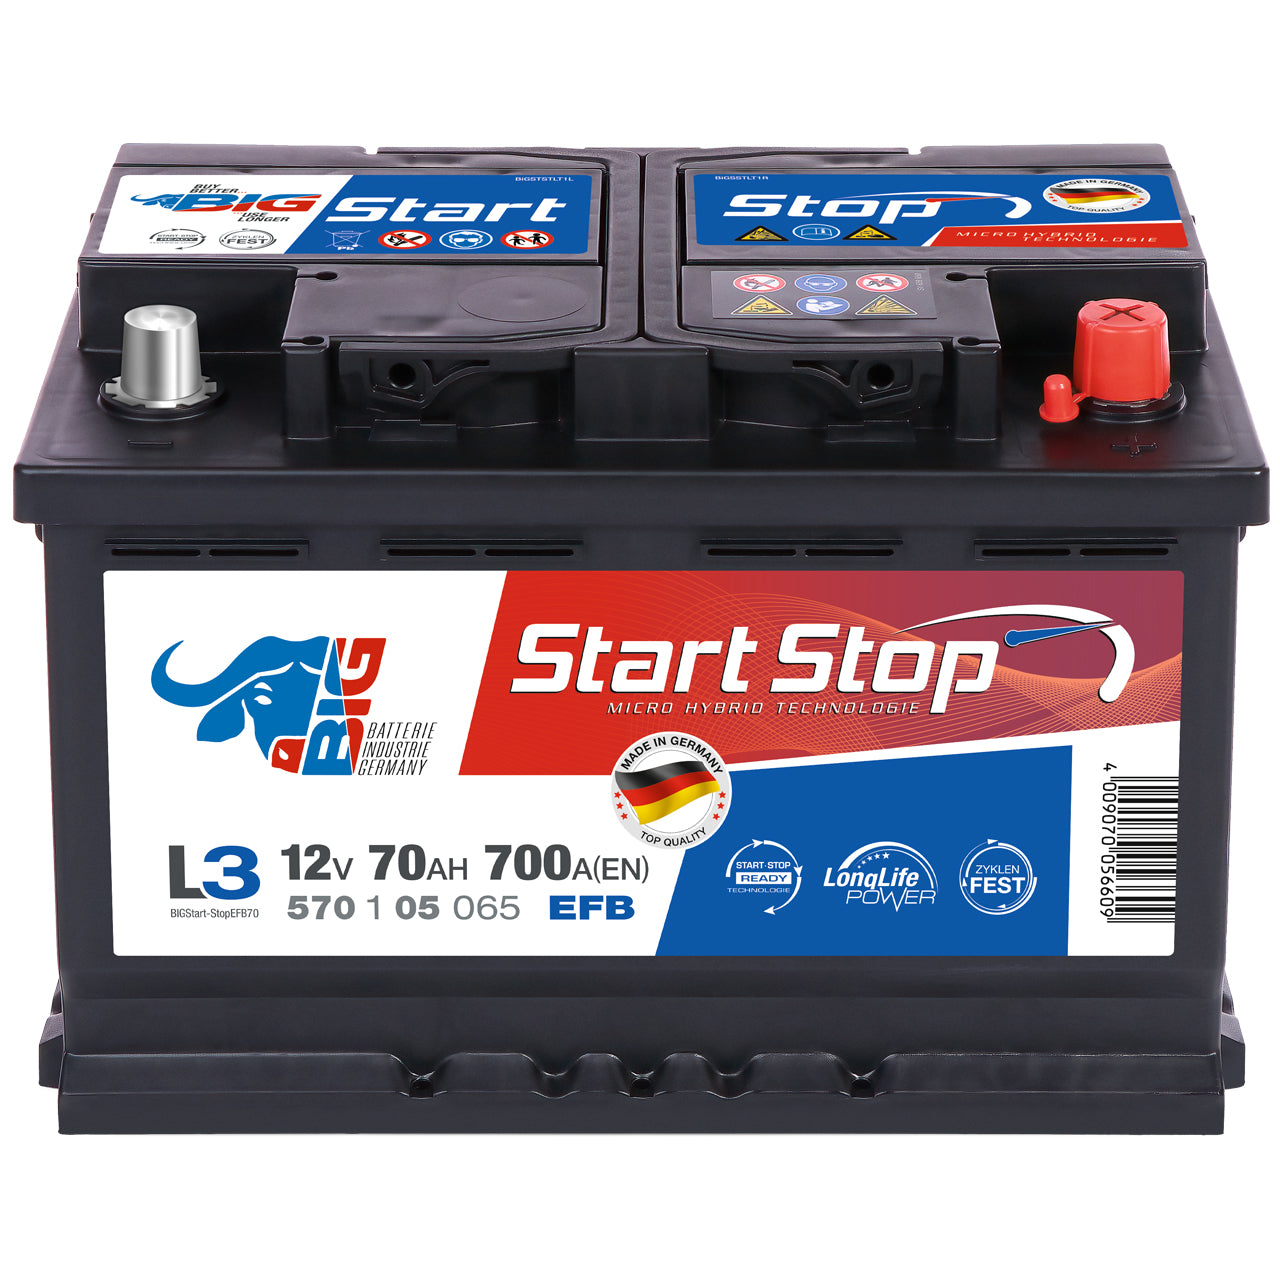 http://www.batterie-industrie-germany.de/cdn/shop/files/Autobatterie-BIGStart-StopEFB70-12V-70Ah-Front.jpg?v=1700650674